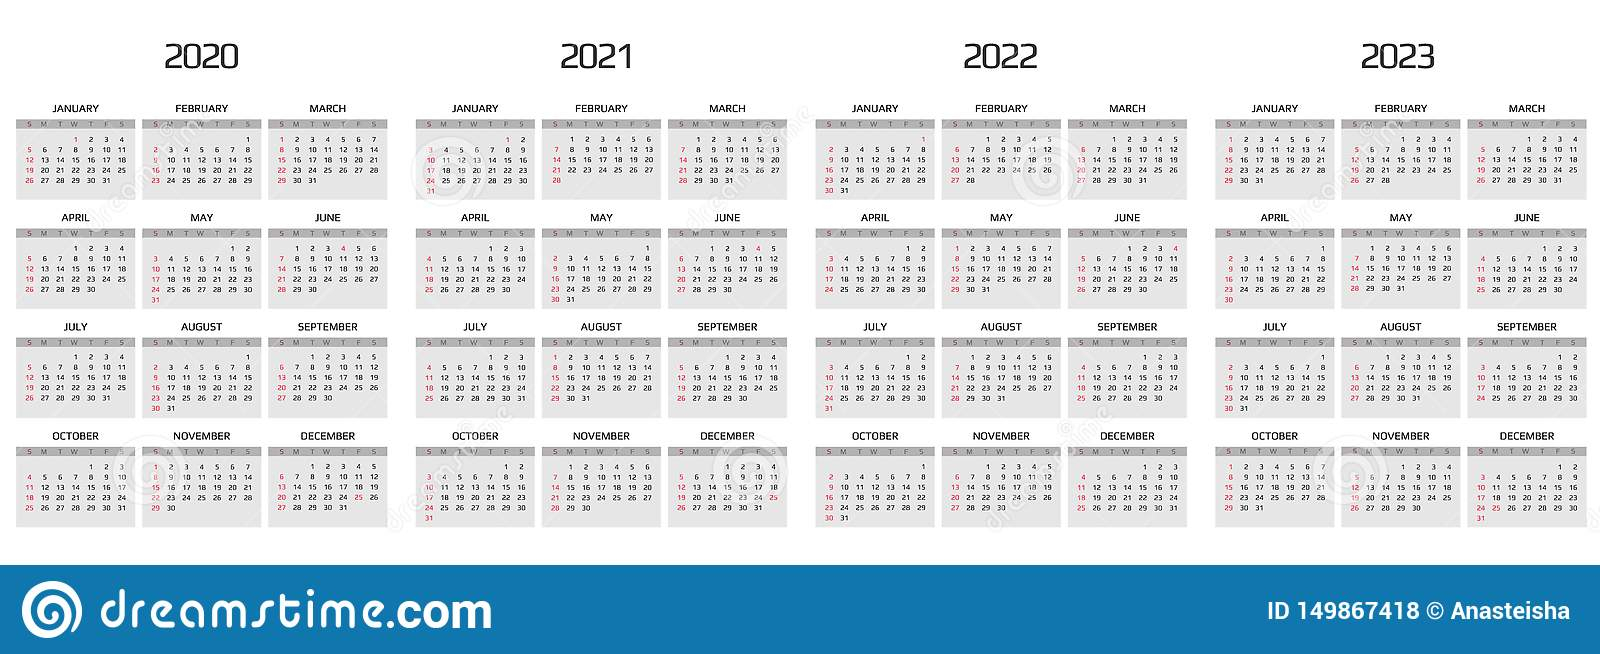 Calendar 2020, 2021, 2022, 2023 Template 12 Months